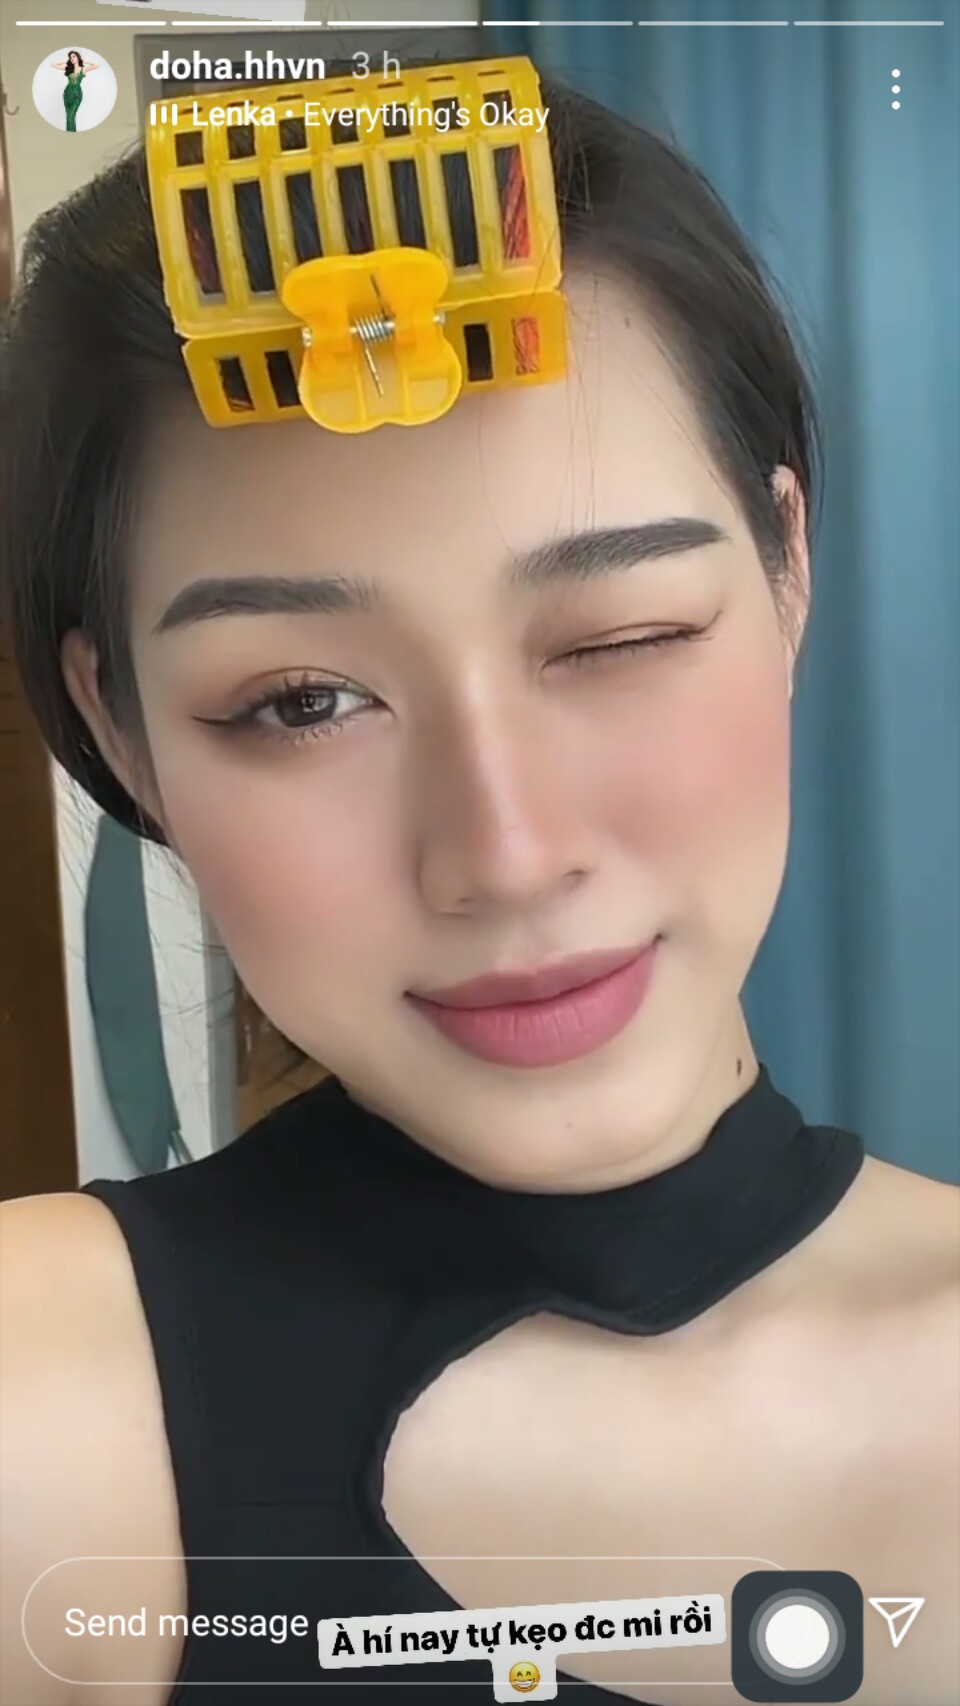 Hoa hậu Đỗ Thị Hà được khen tới tấp vì quá xinh khi tự make up, làm tóc - Ảnh 2